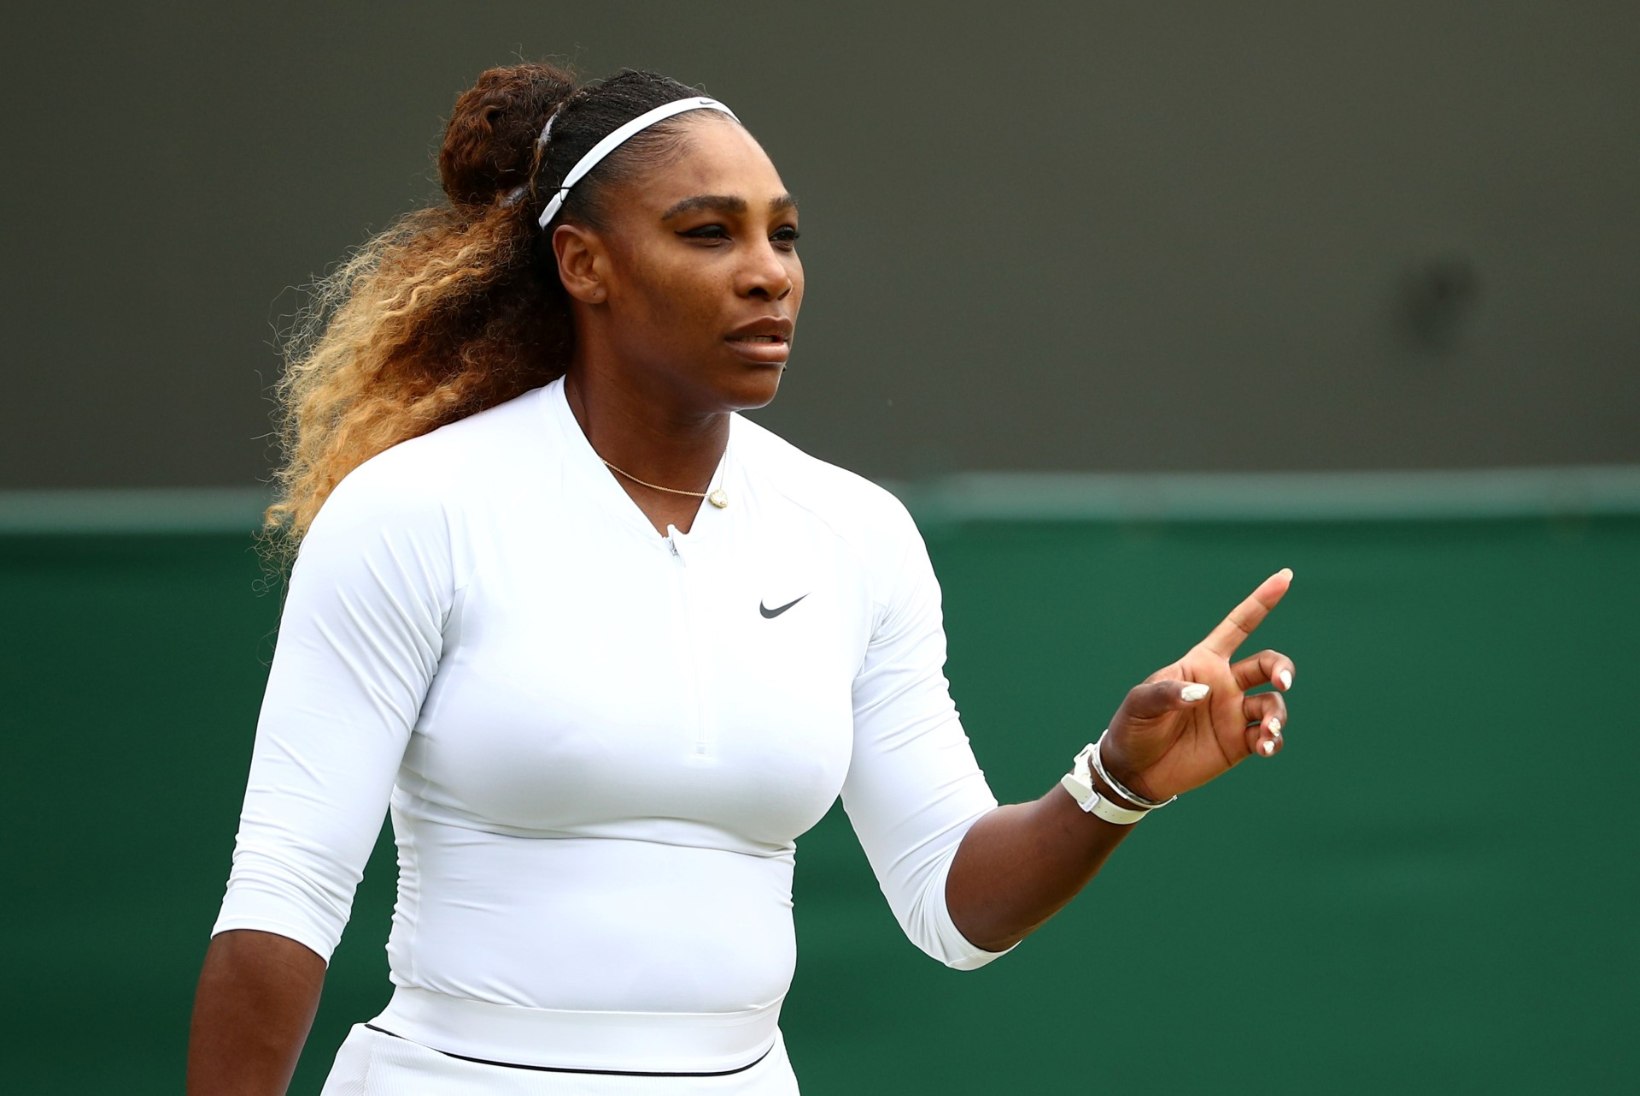 FOTOD | Ohohhoo: Serena Williams välgutas ajakirjakaanel võimsat paljast ahtrit